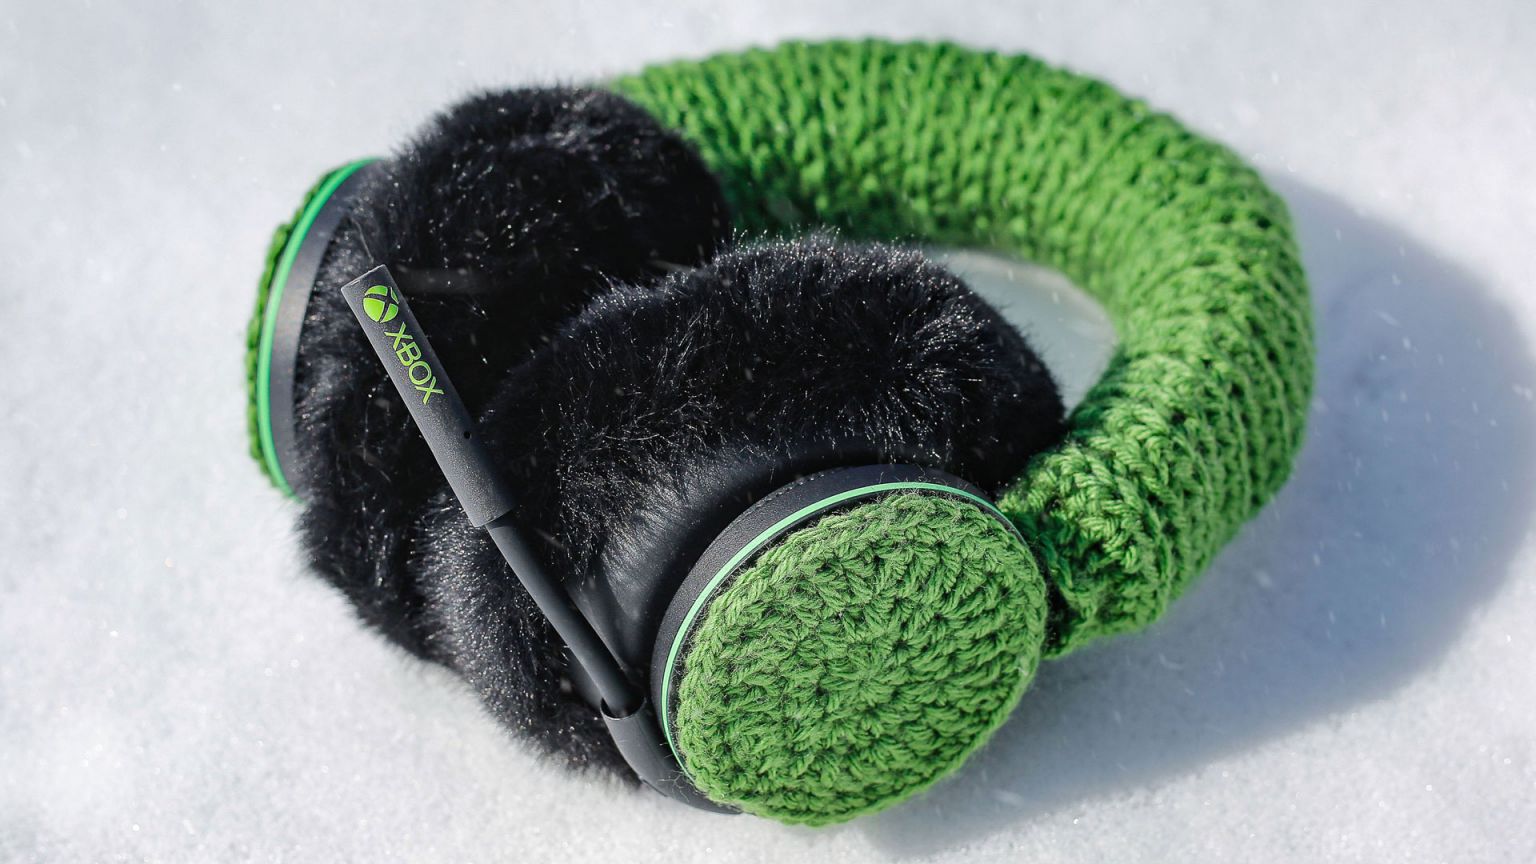 La base son los auriculares oficiales de Xbox con material de invierno recubriendolos. Tristemente no se pondrán a la venta.